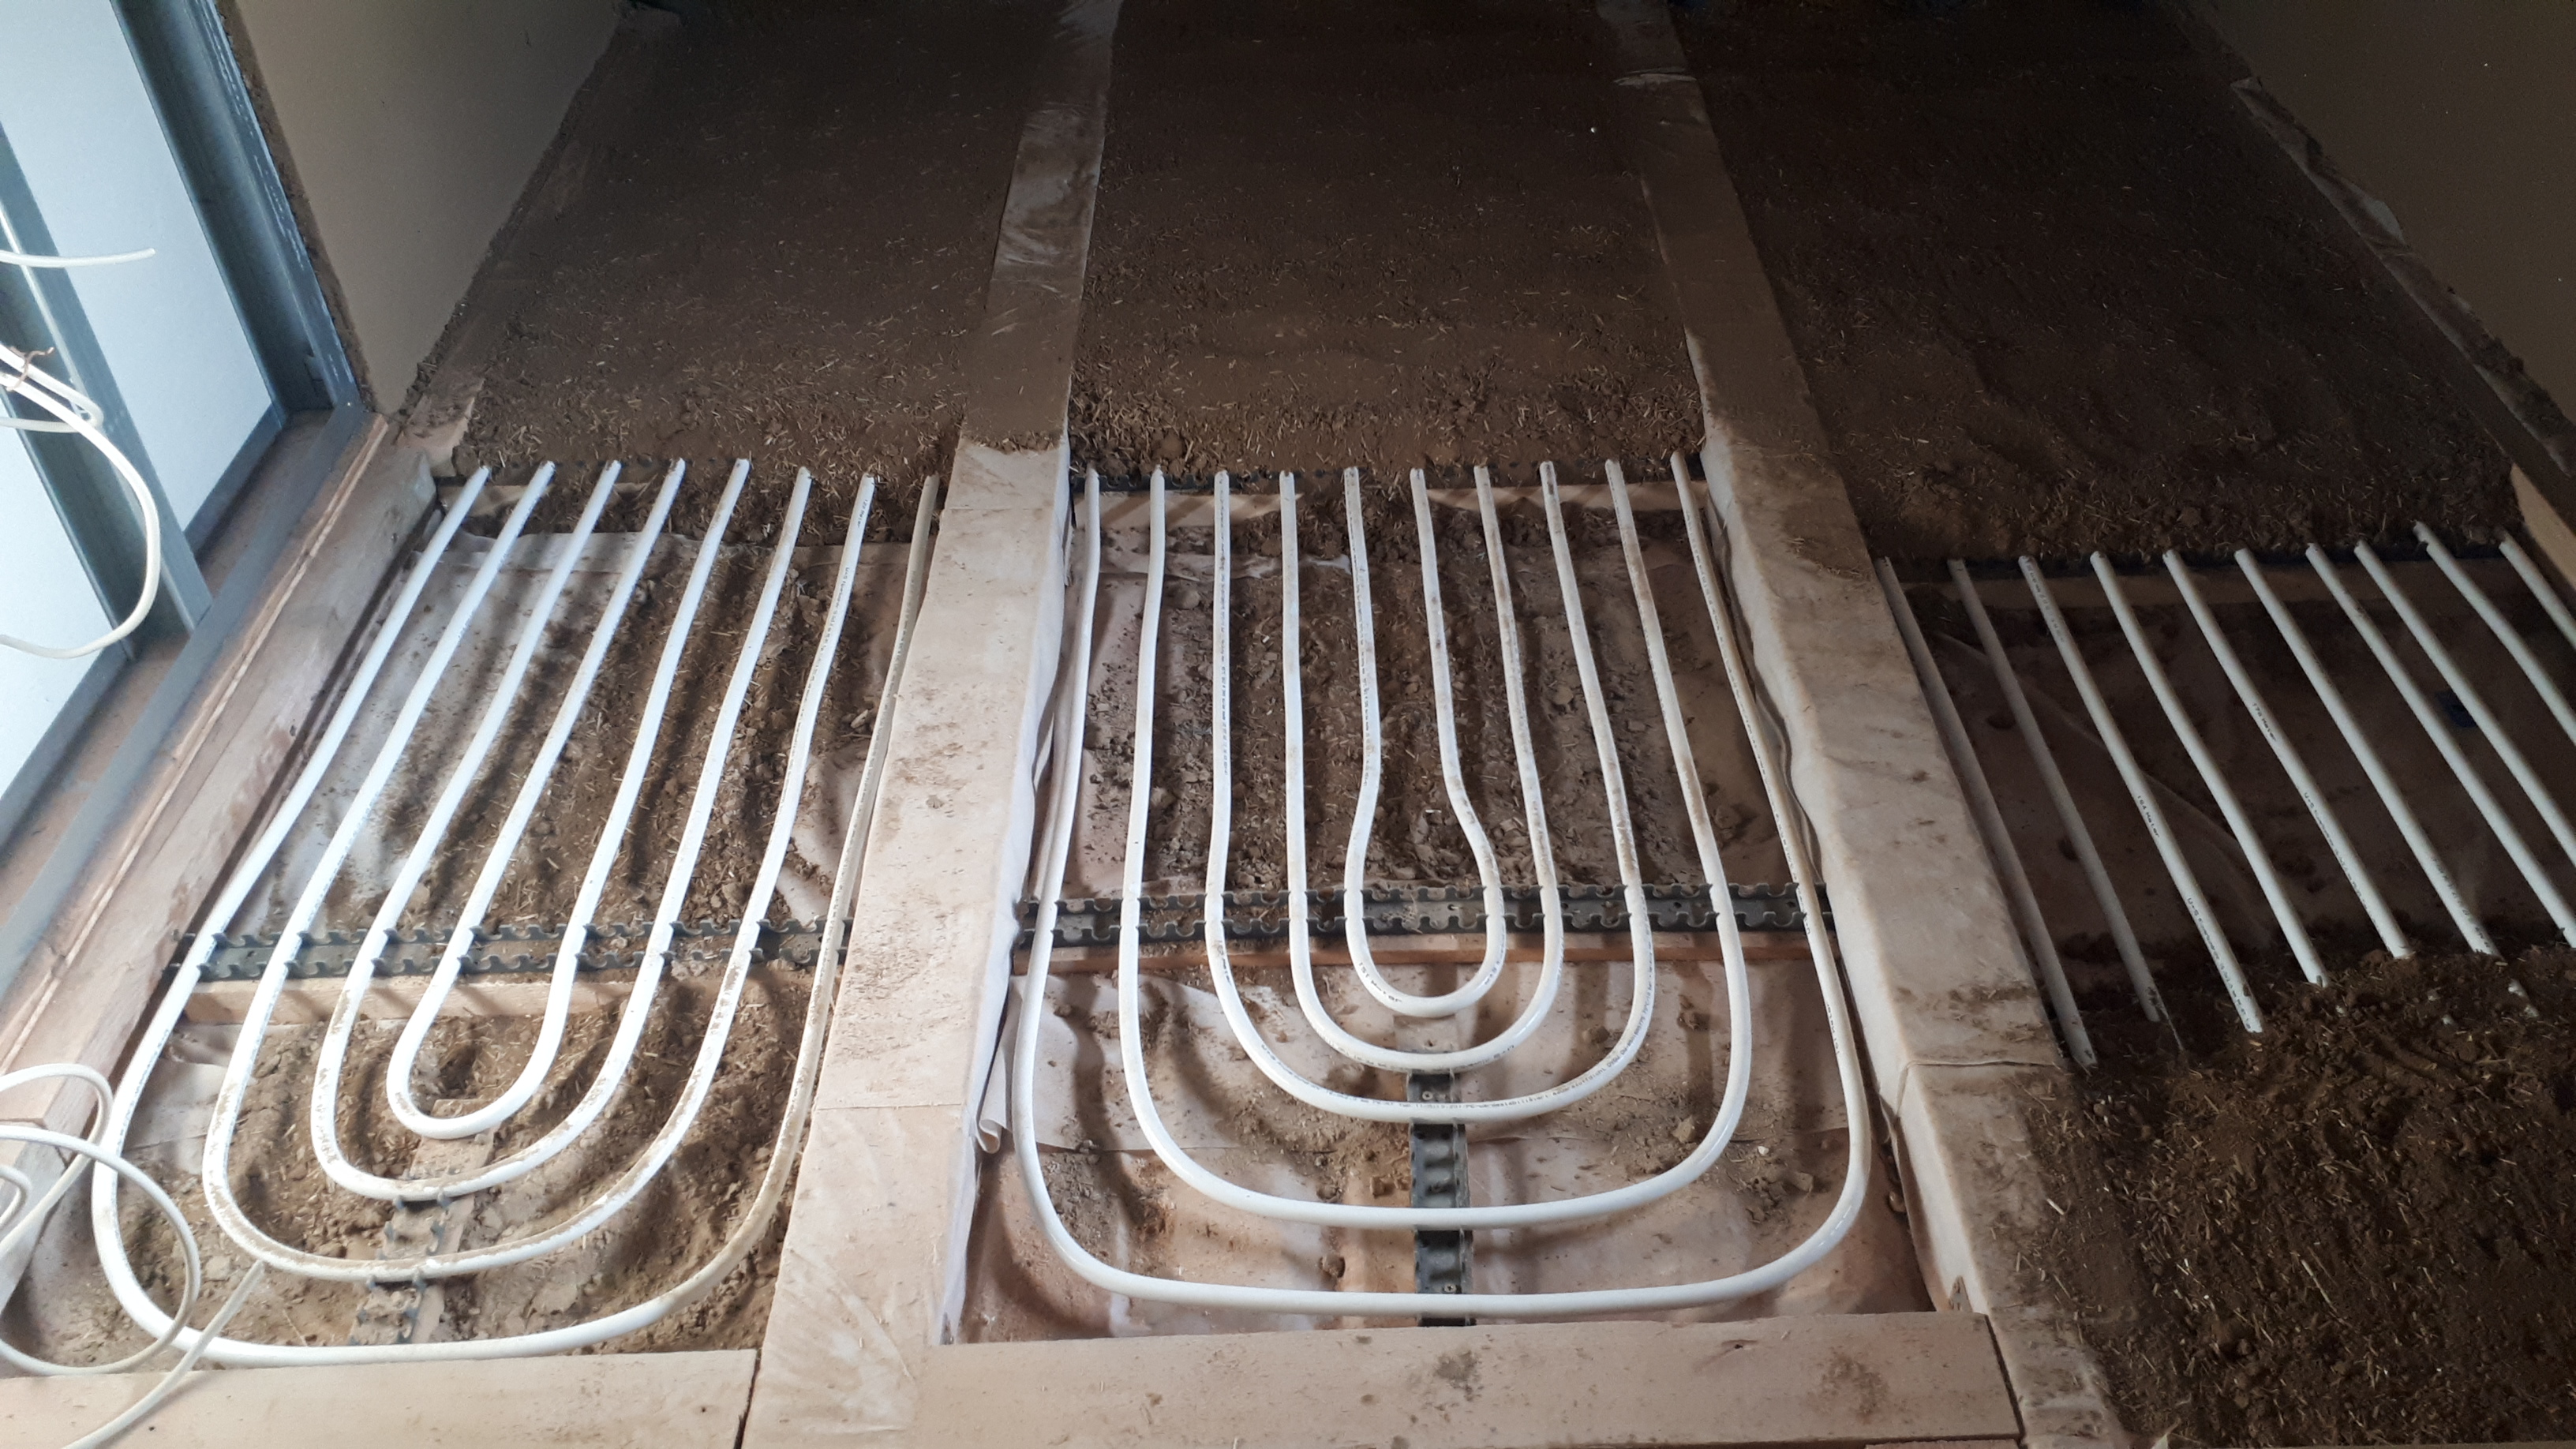 Fußbodentemperierung in Lehm für Holzböden in Bädern (1)